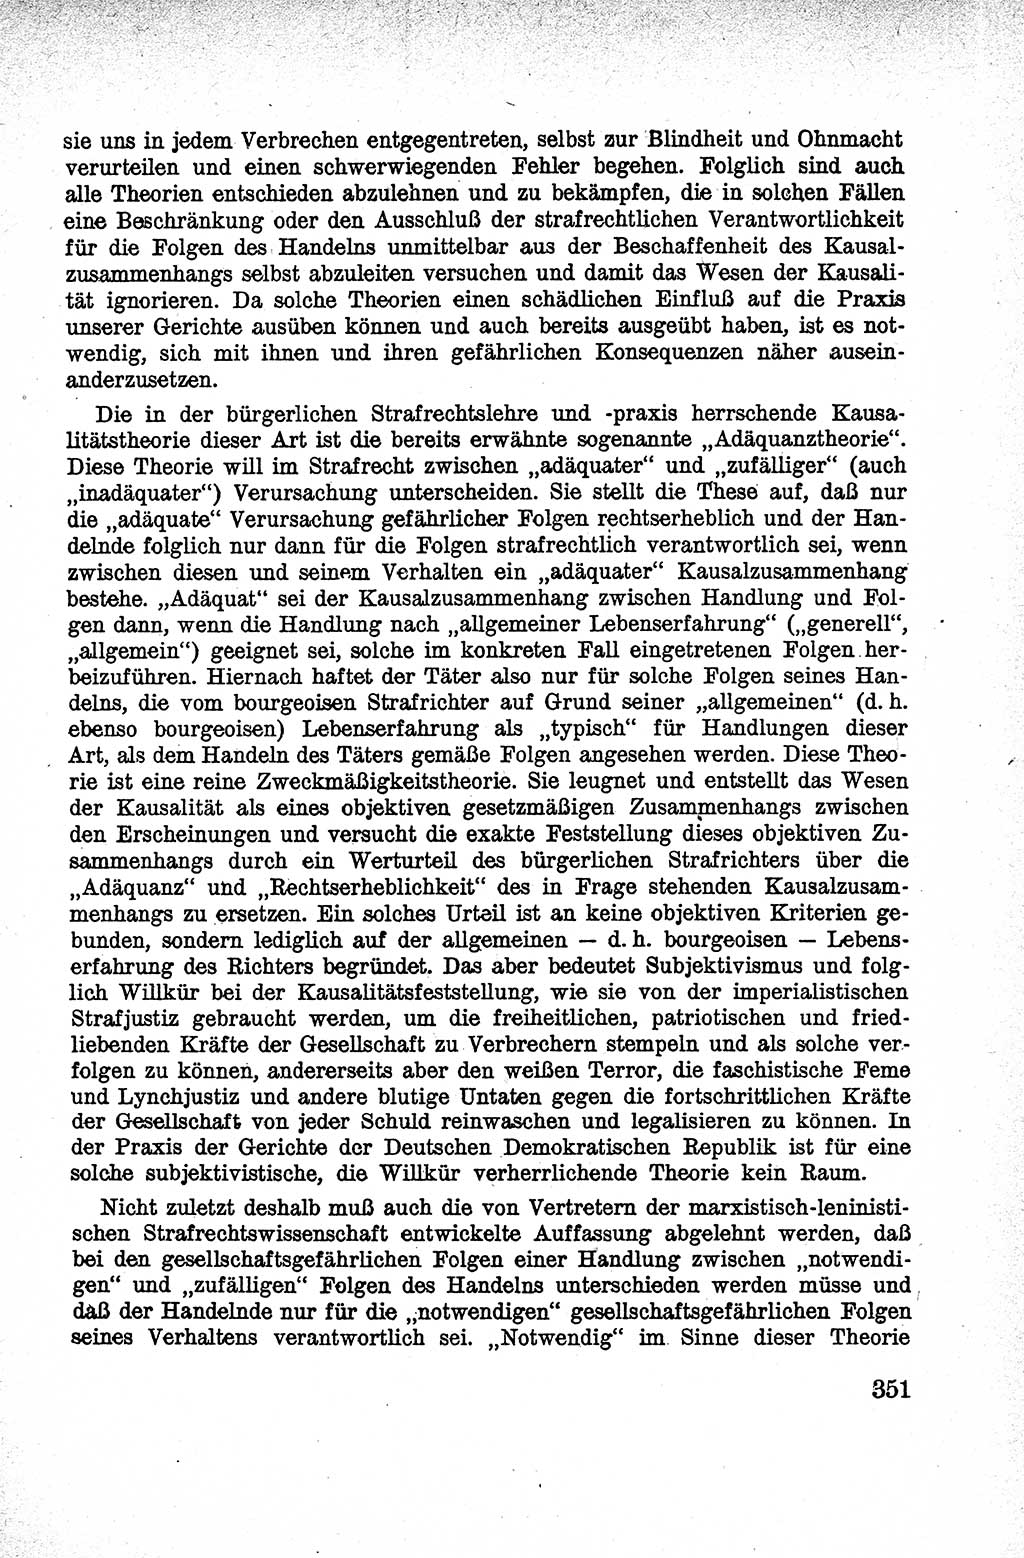 Lehrbuch des Strafrechts der Deutschen Demokratischen Republik (DDR), Allgemeiner Teil 1959, Seite 351 (Lb. Strafr. DDR AT 1959, S. 351)